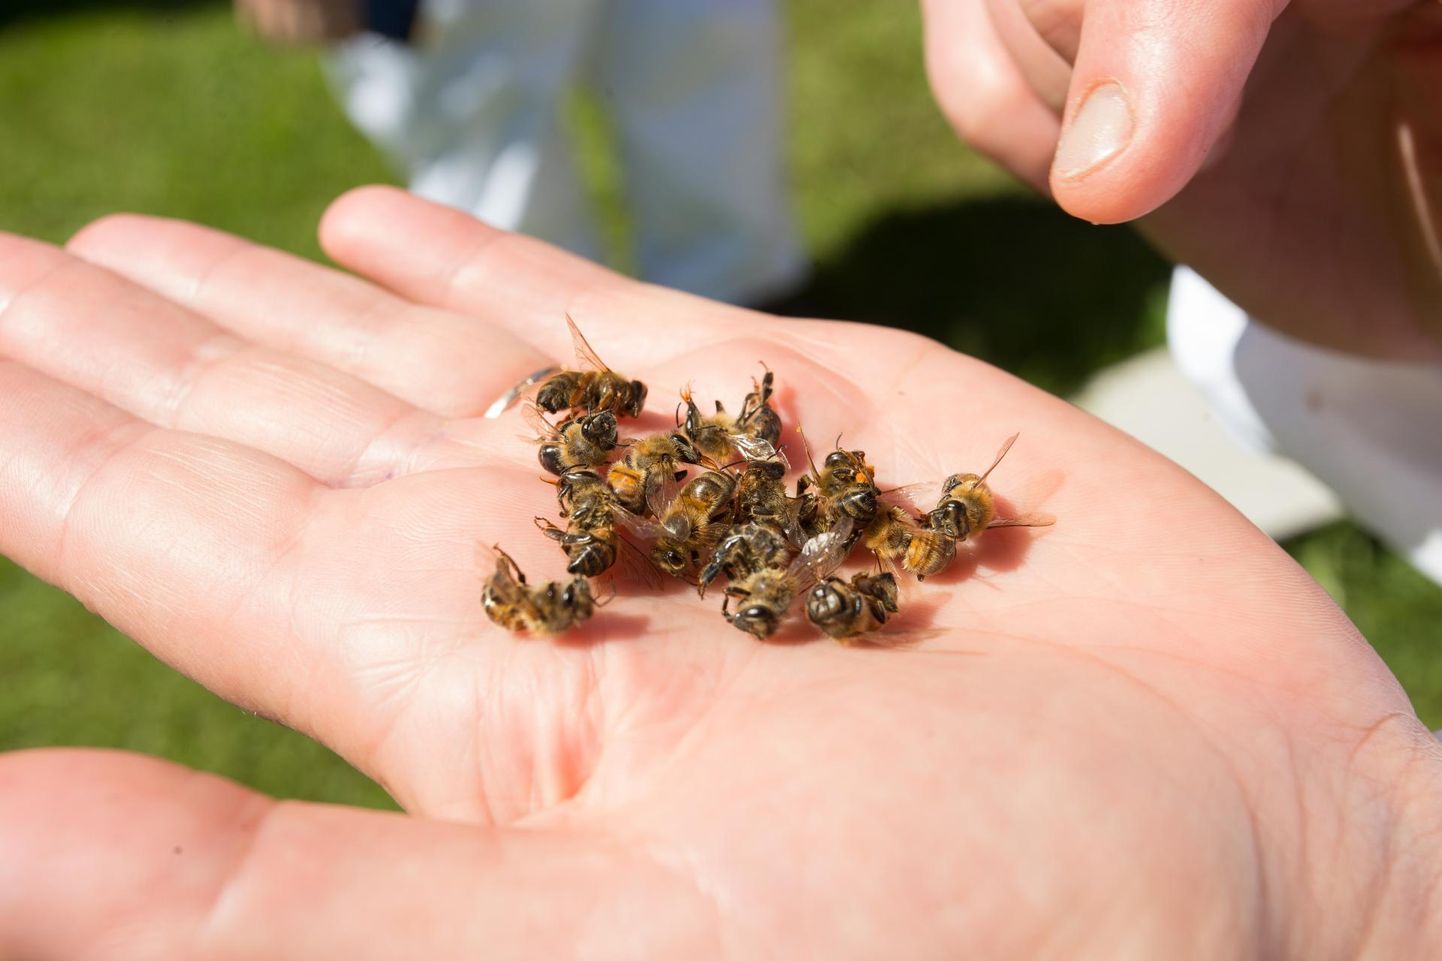 Eestis on igal aastal nii mõnigi mesinik oma meelindude peredest ilma jäänud. Tavaliselt on selle taga olnud taimekaitsevahendite kasutamise reegleid eiranud põllumehed. 